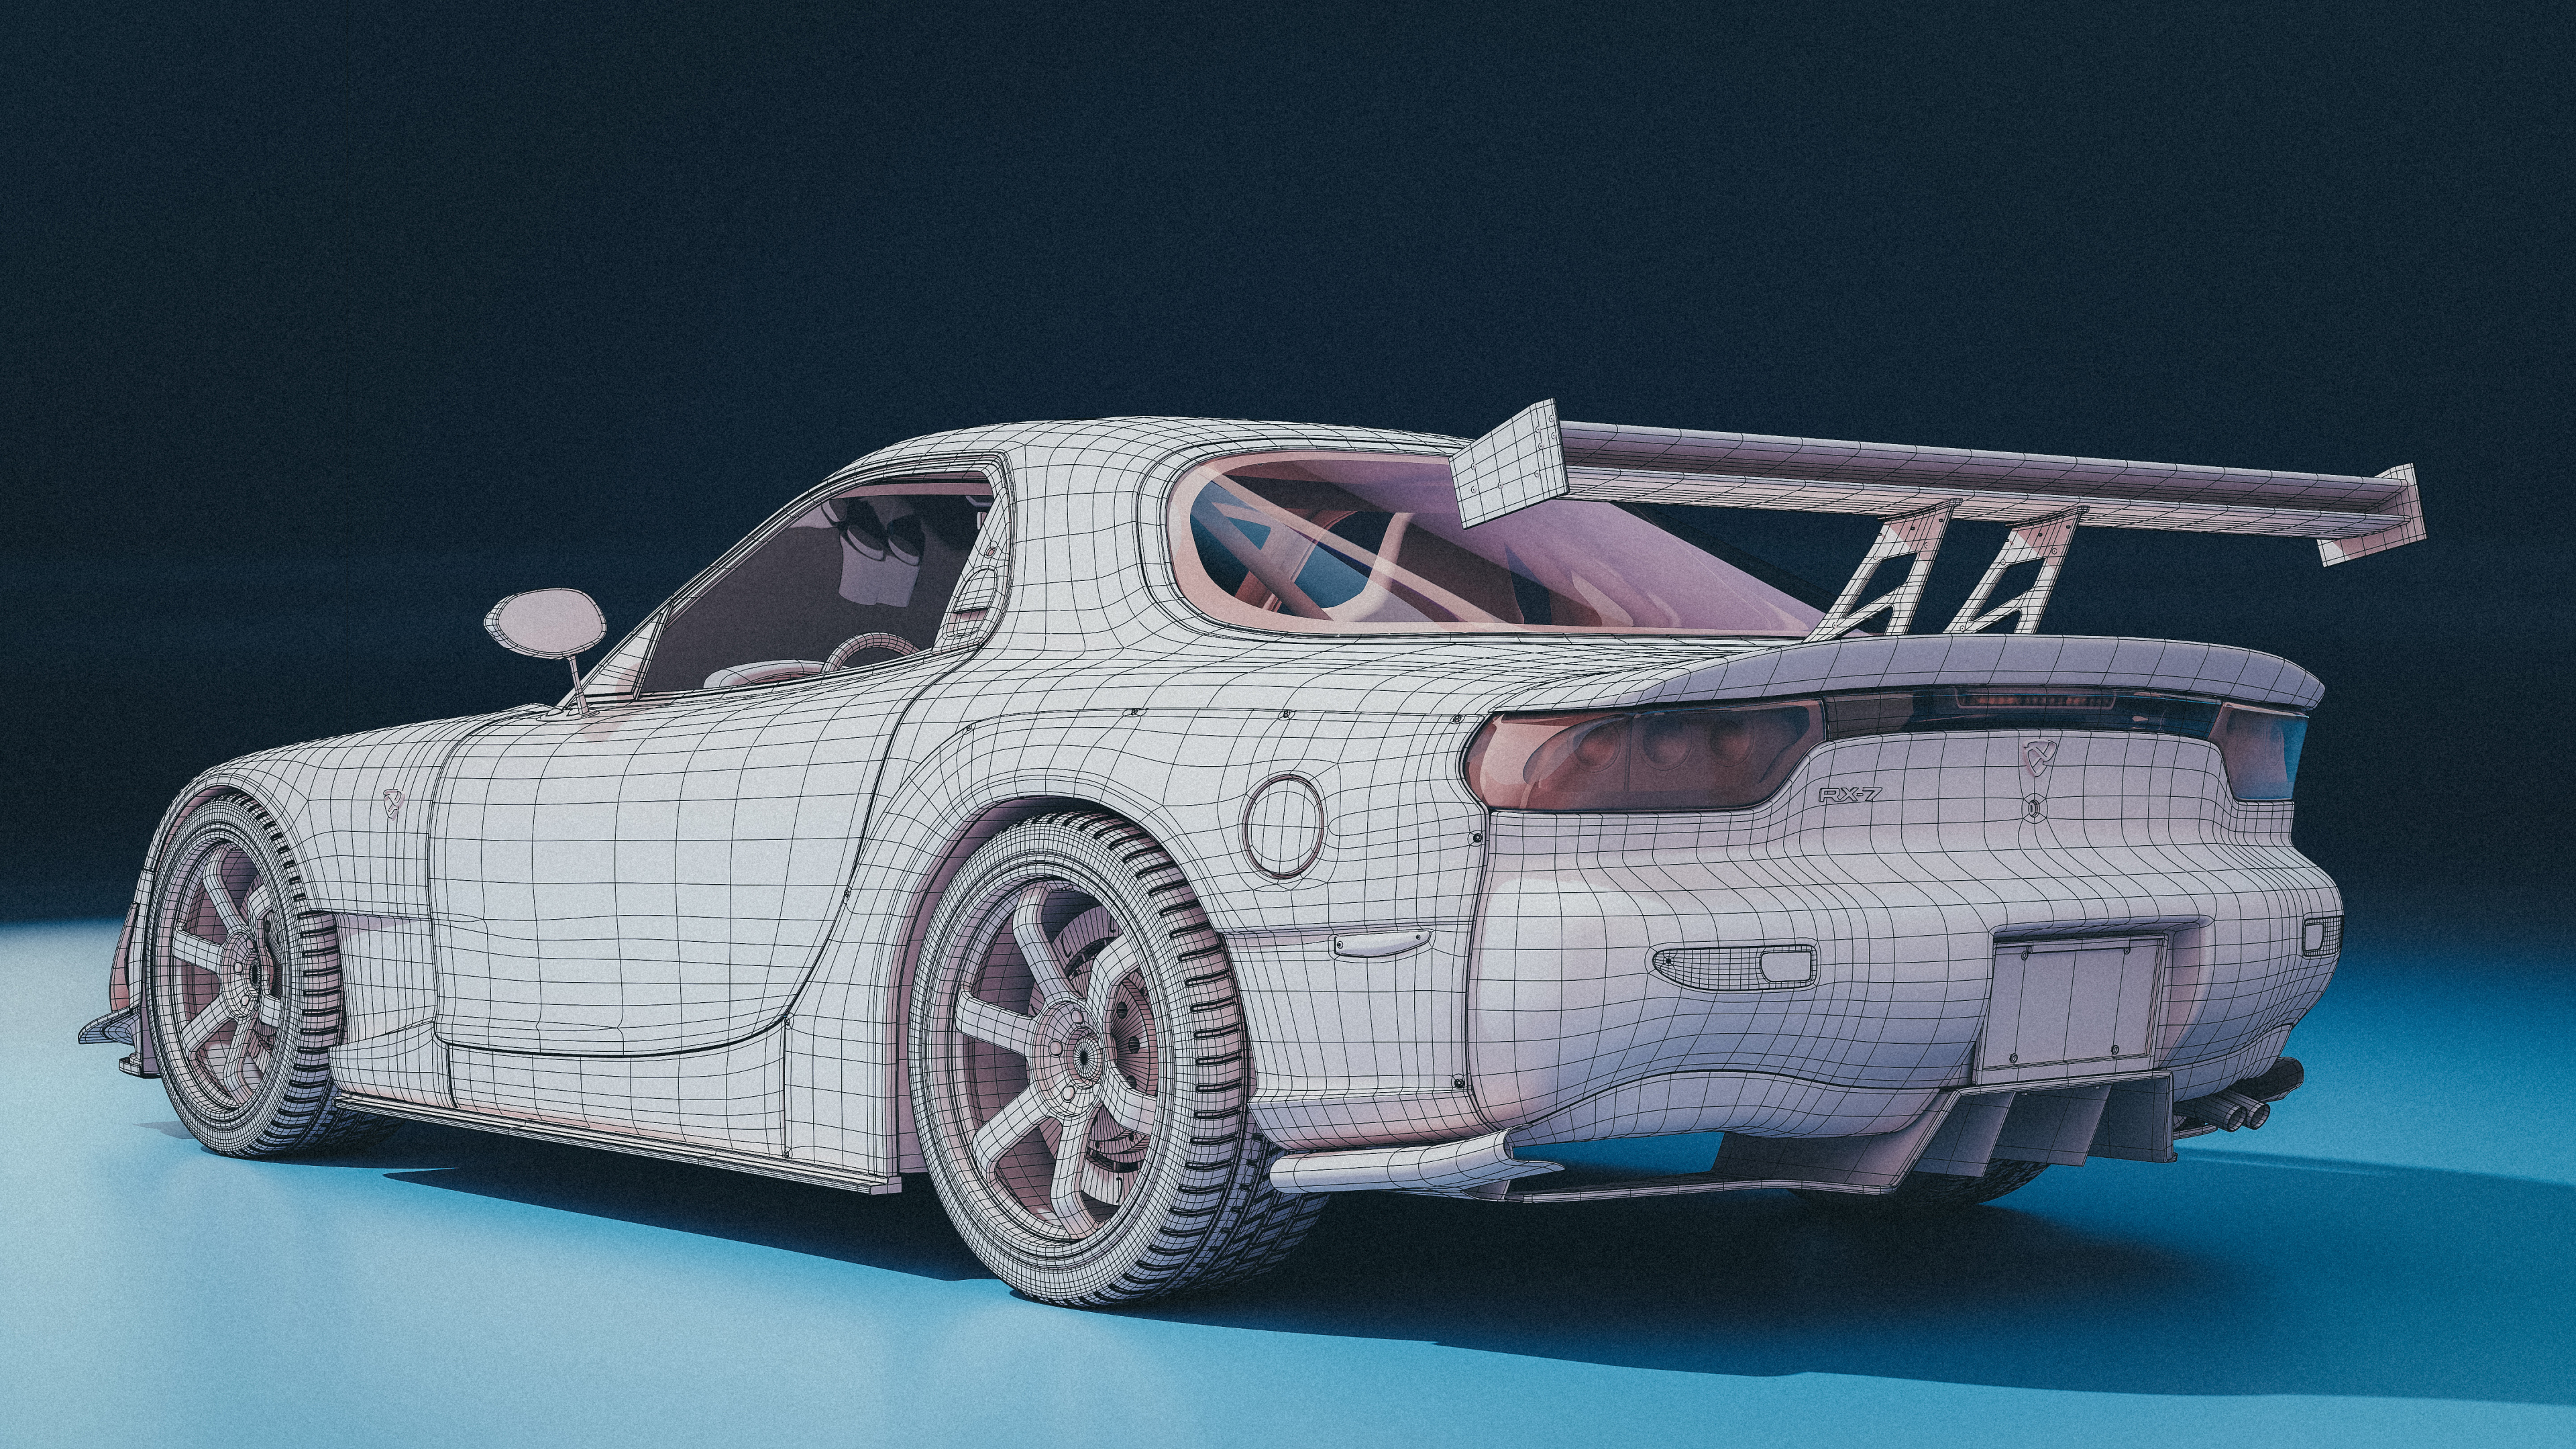 Mazda RX-7 in Blender cycles render resim